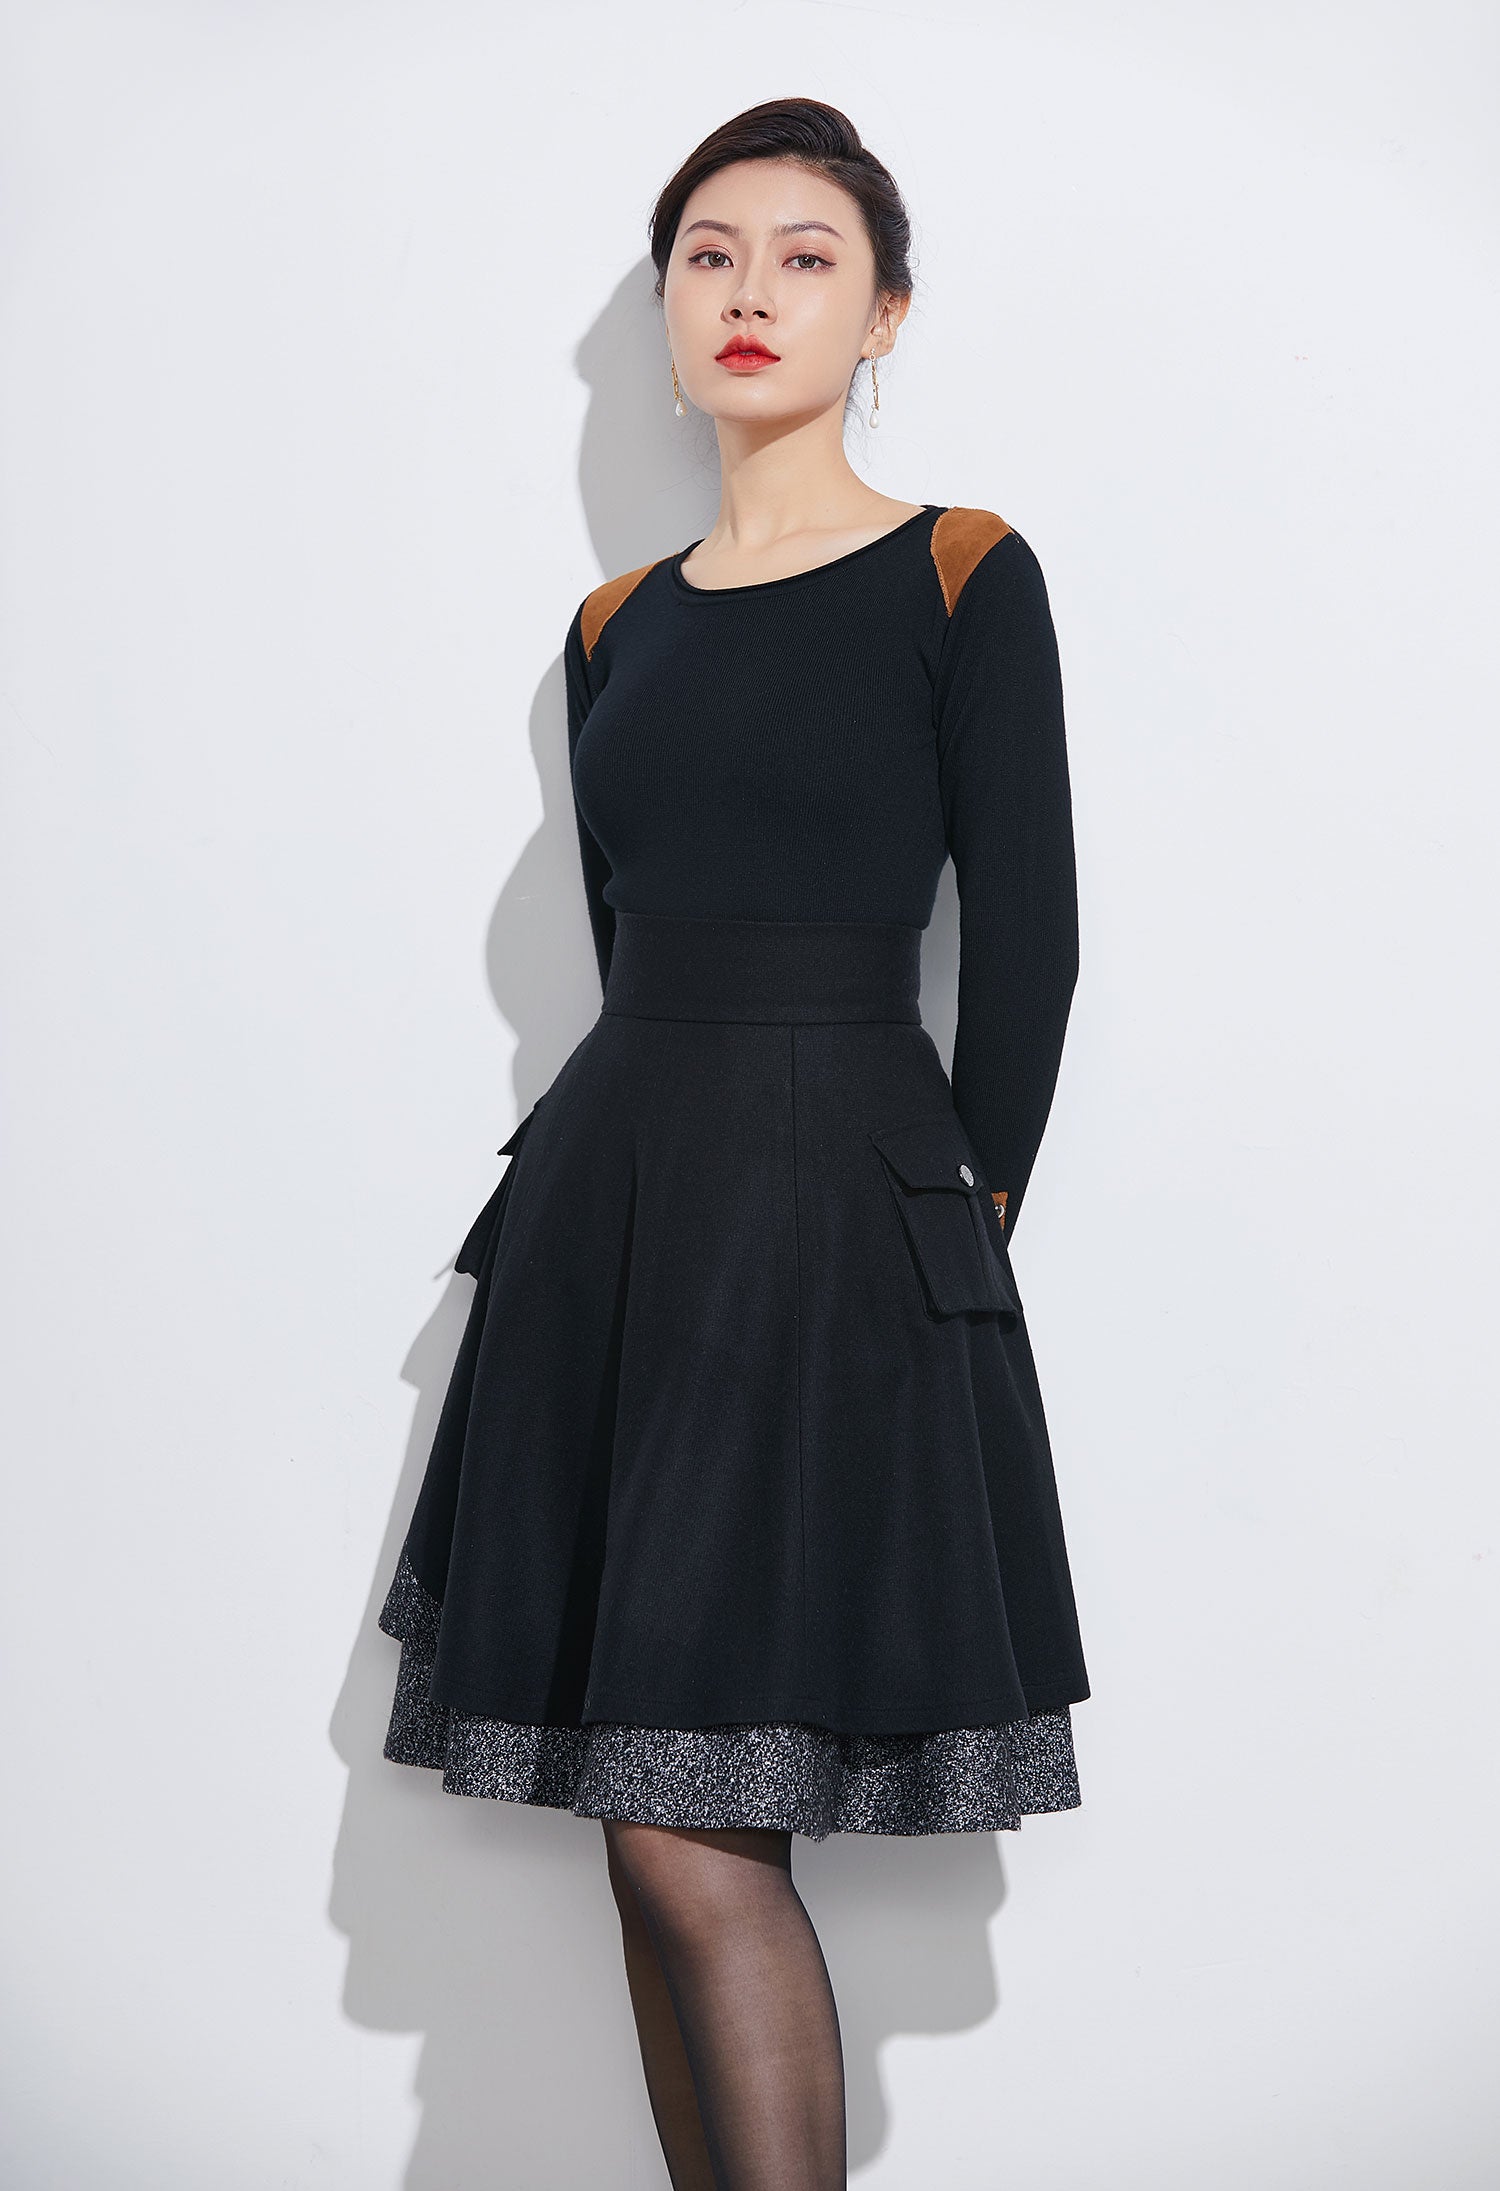 Women's short skirt for winter, designer skirt 1627# – XiaoLizi